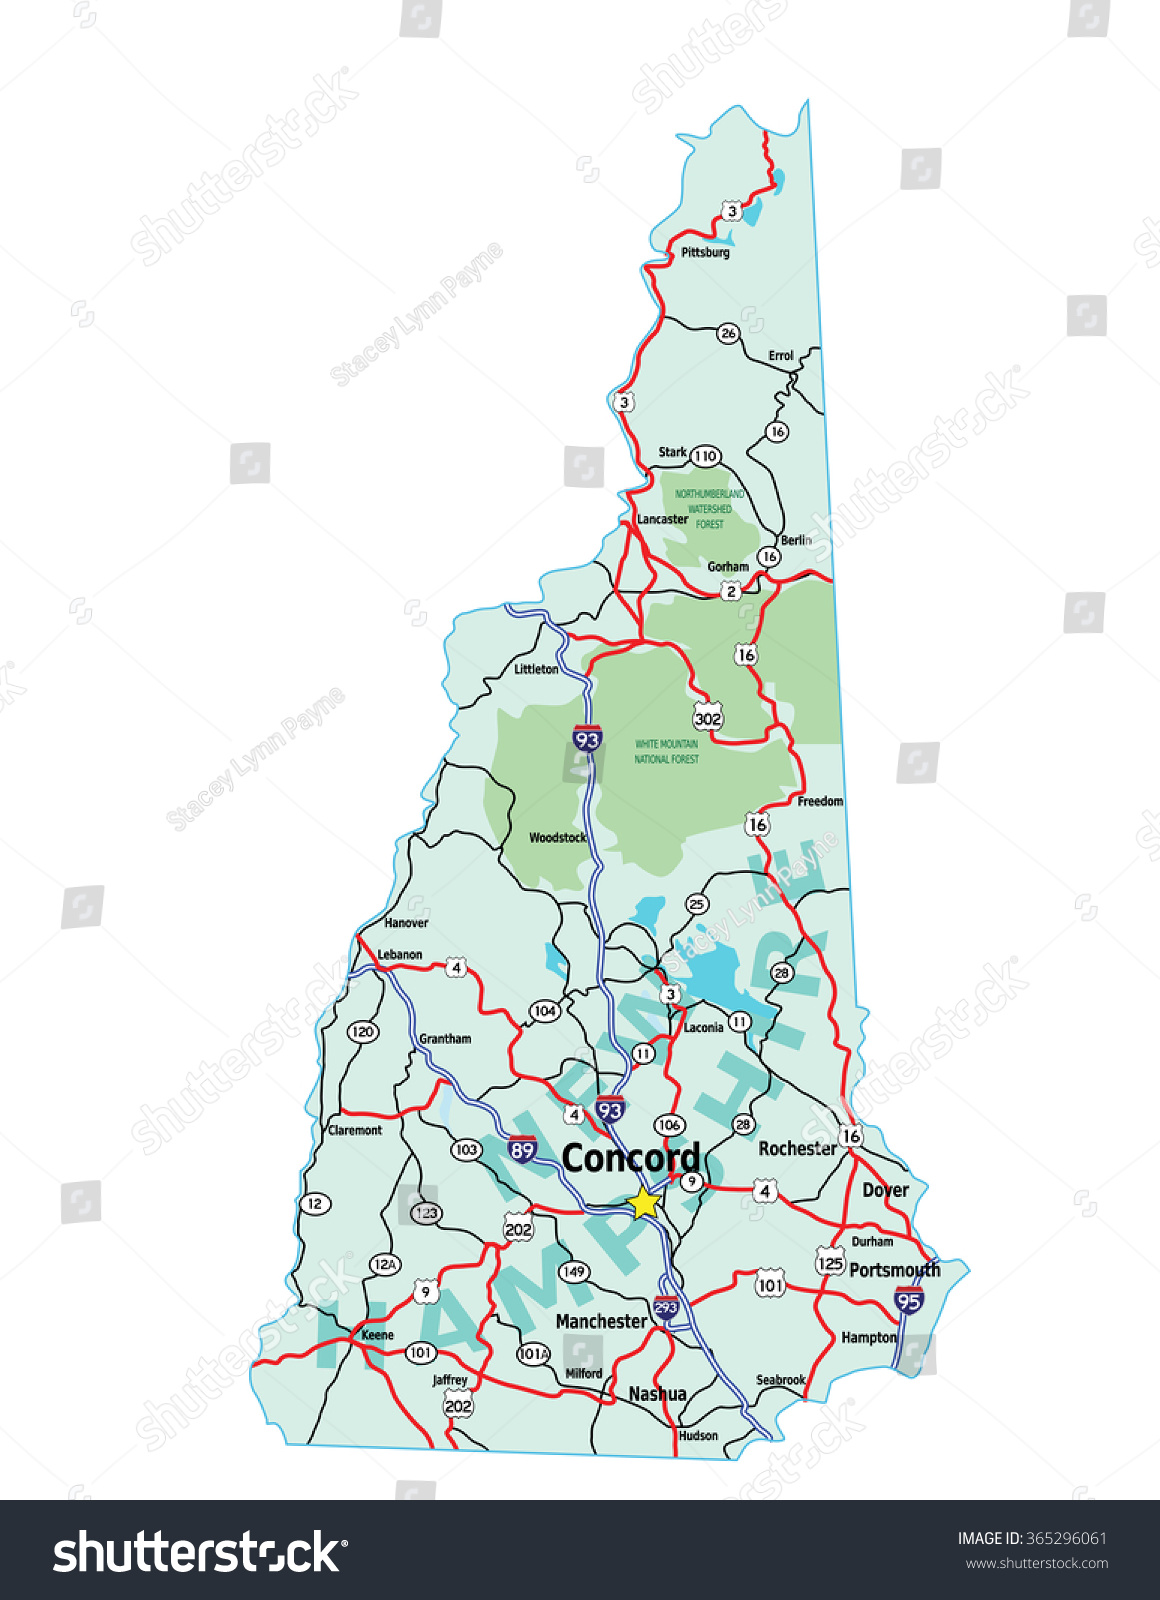 美国新罕布什尔州州际公路地图,矢量文件包含